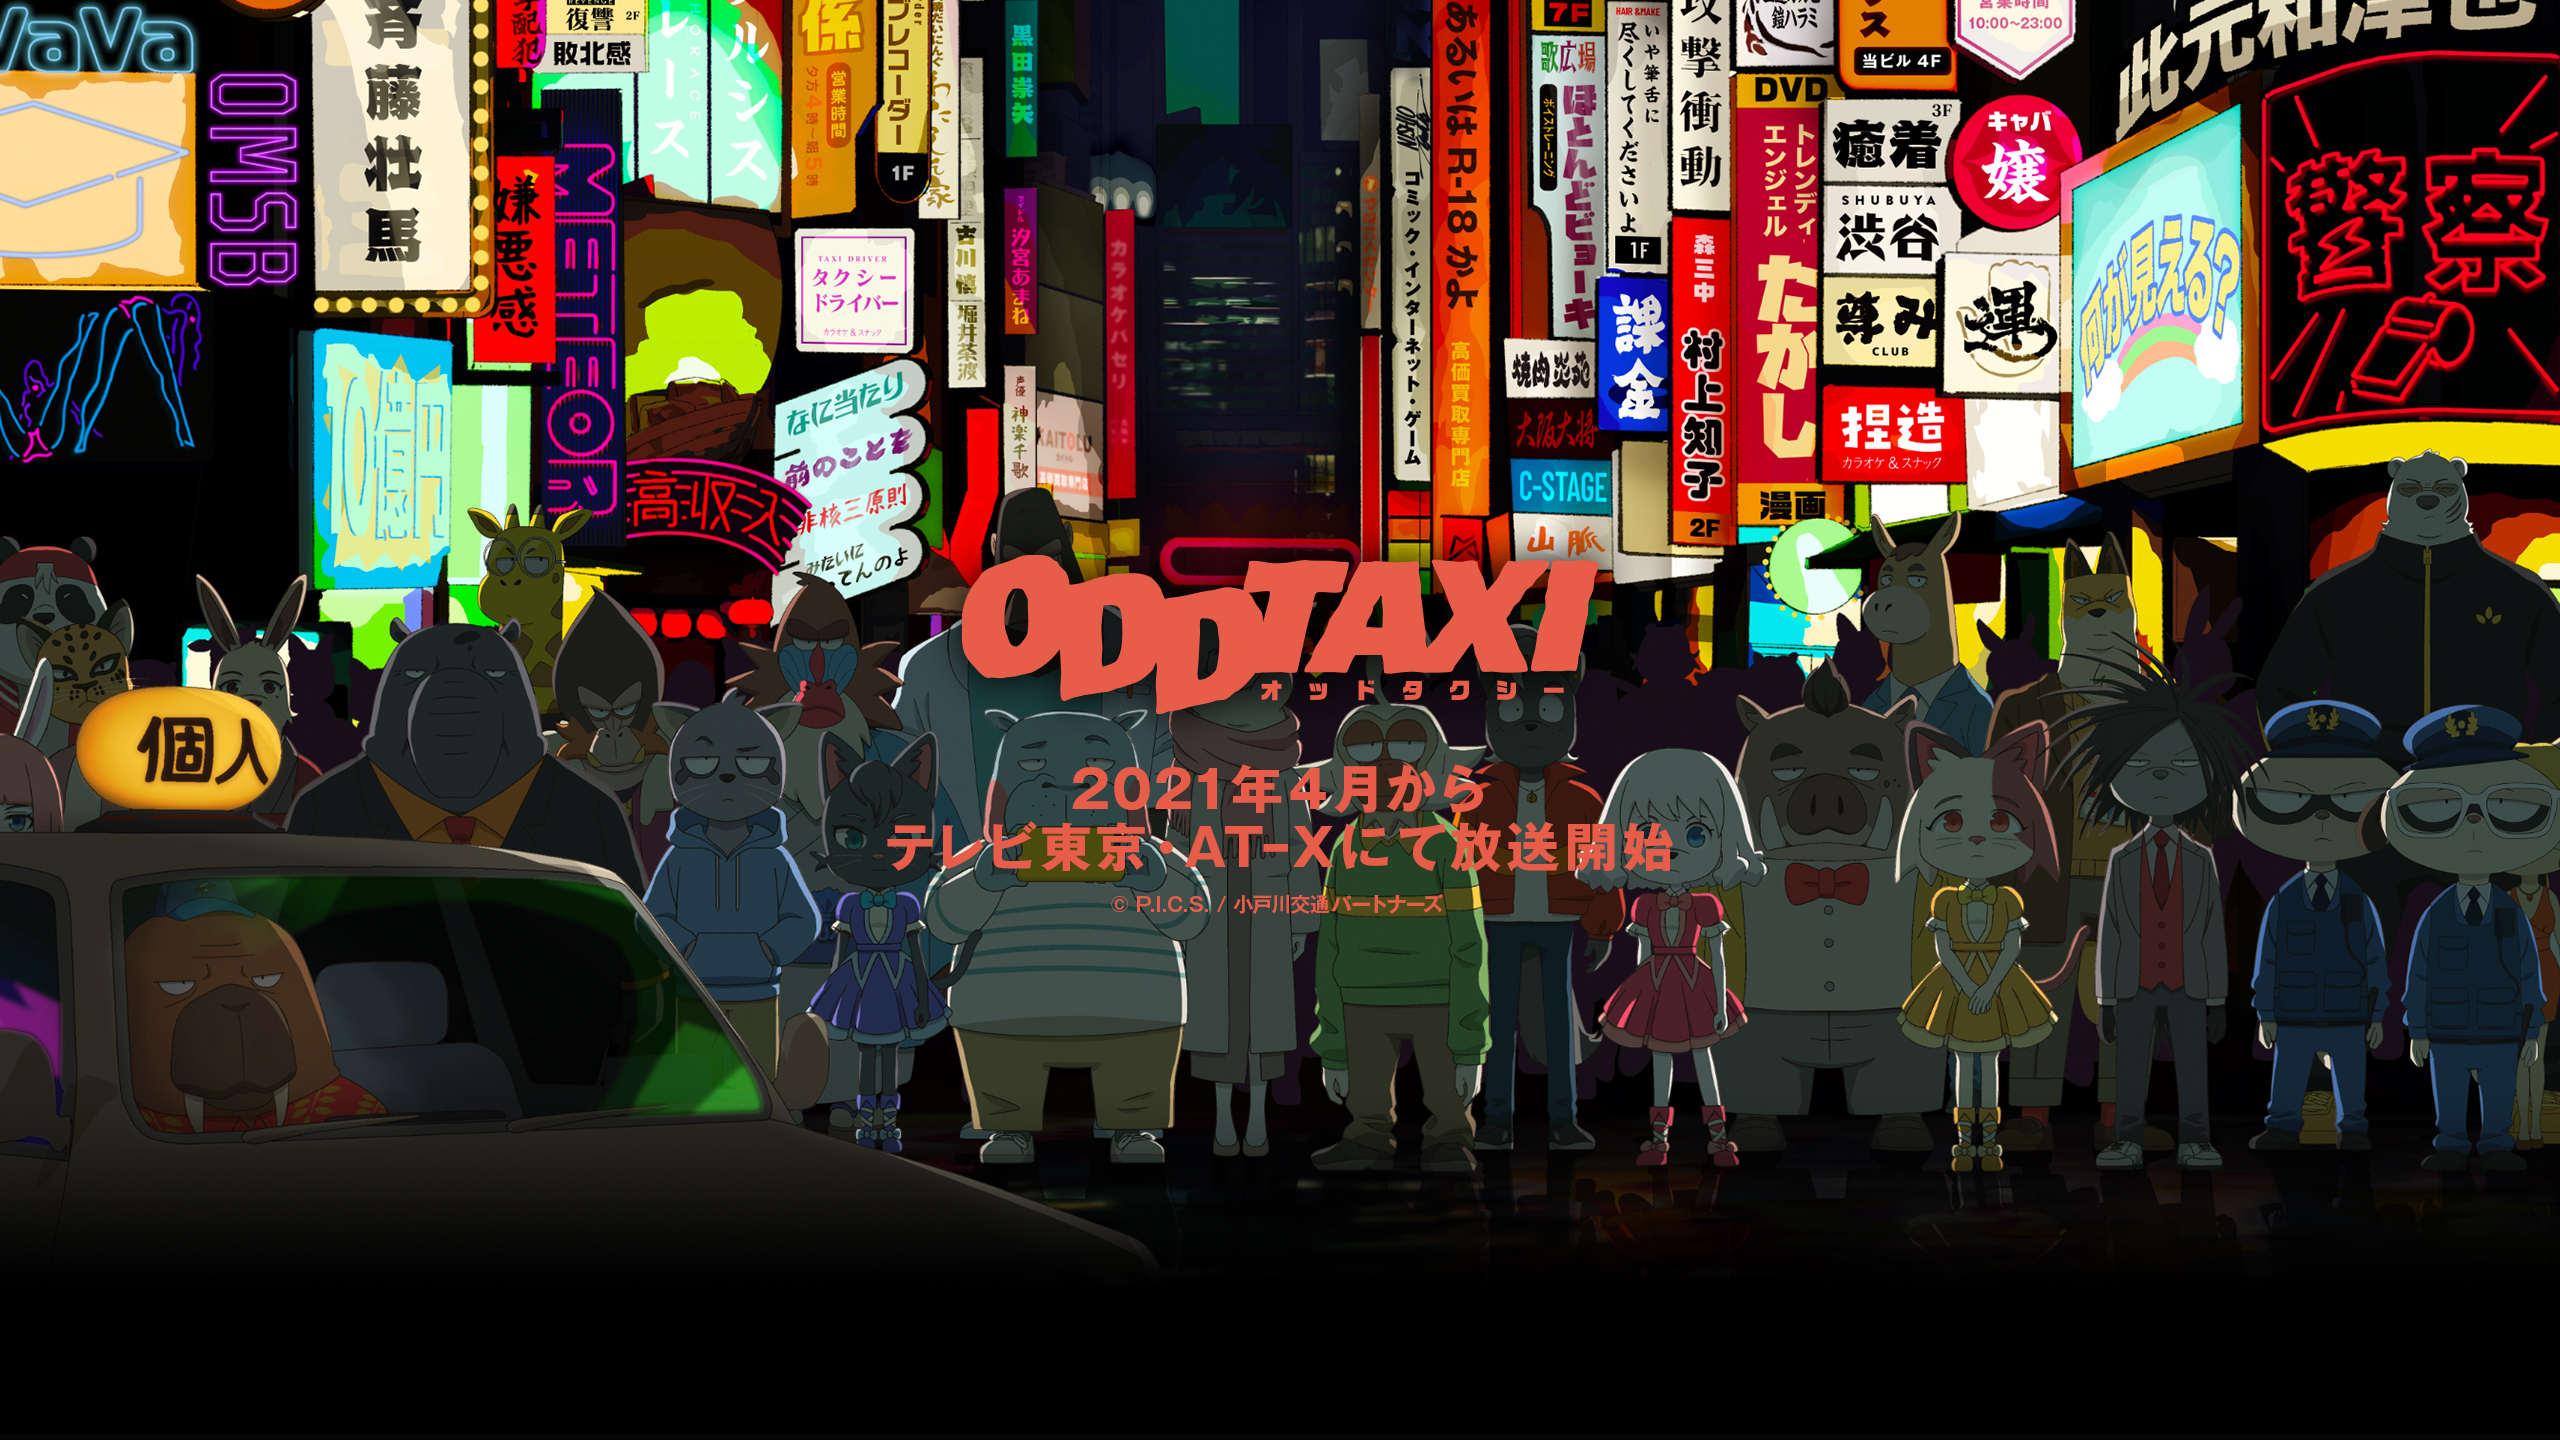 アニメ「オッドタクシー」が2021年4月からテレビ東京・AT-Xにて放送決定。